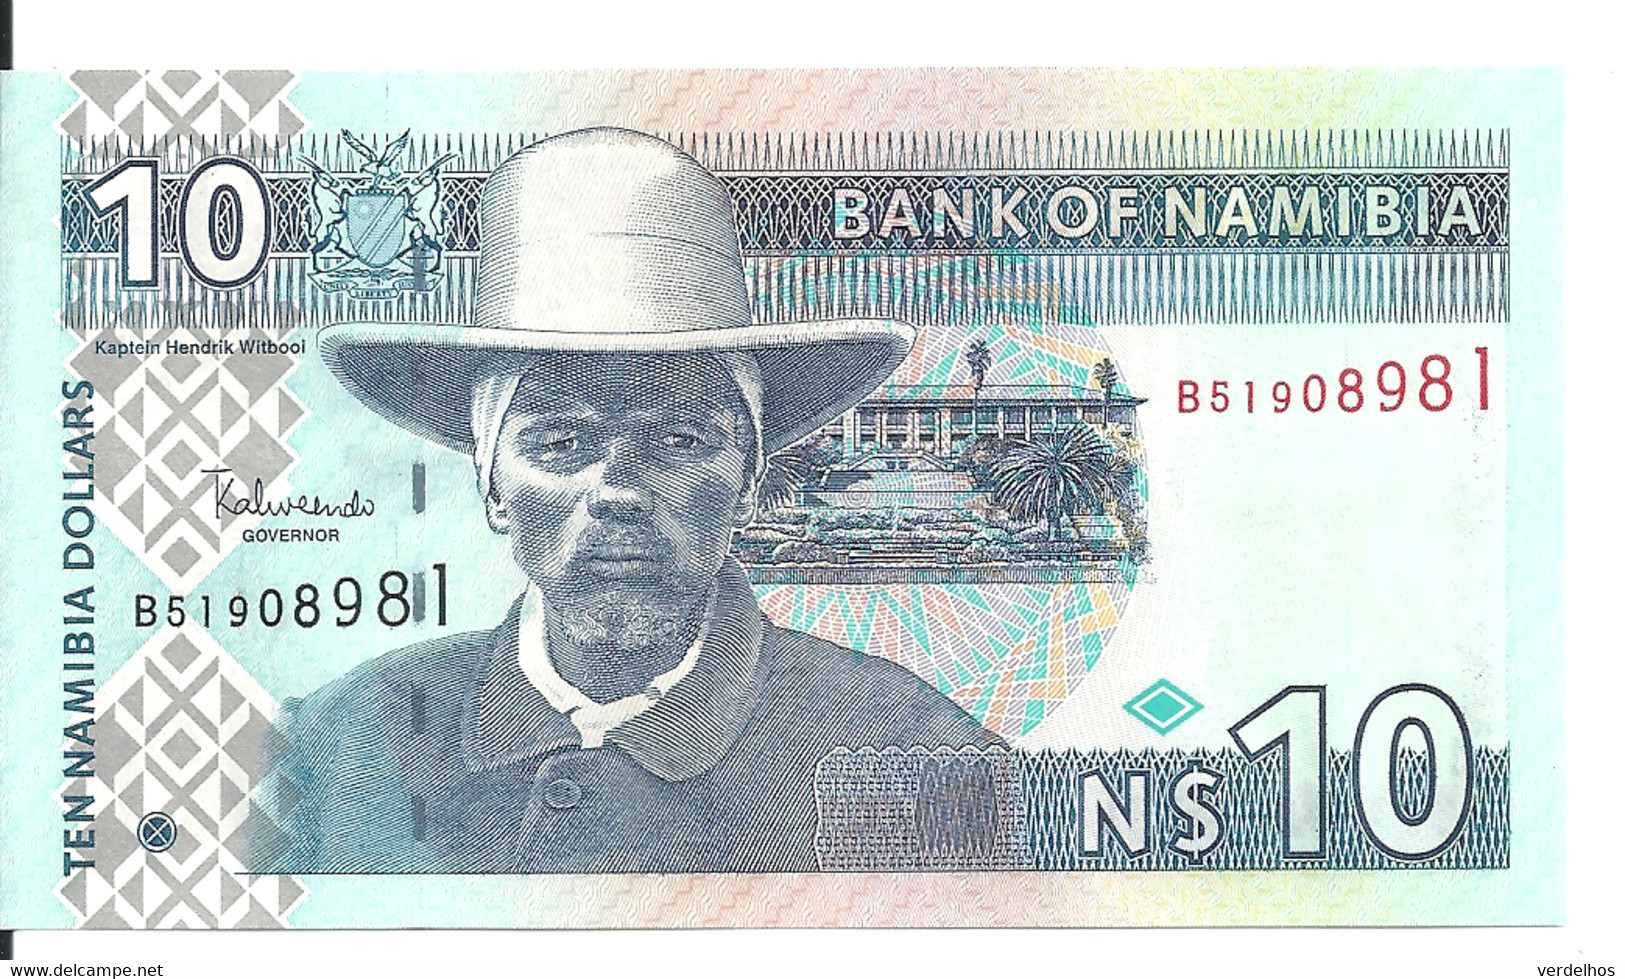 NAMIBIE 10 NAMIBIA DOLLARS ND2009 UNC P 4 C - Namibia